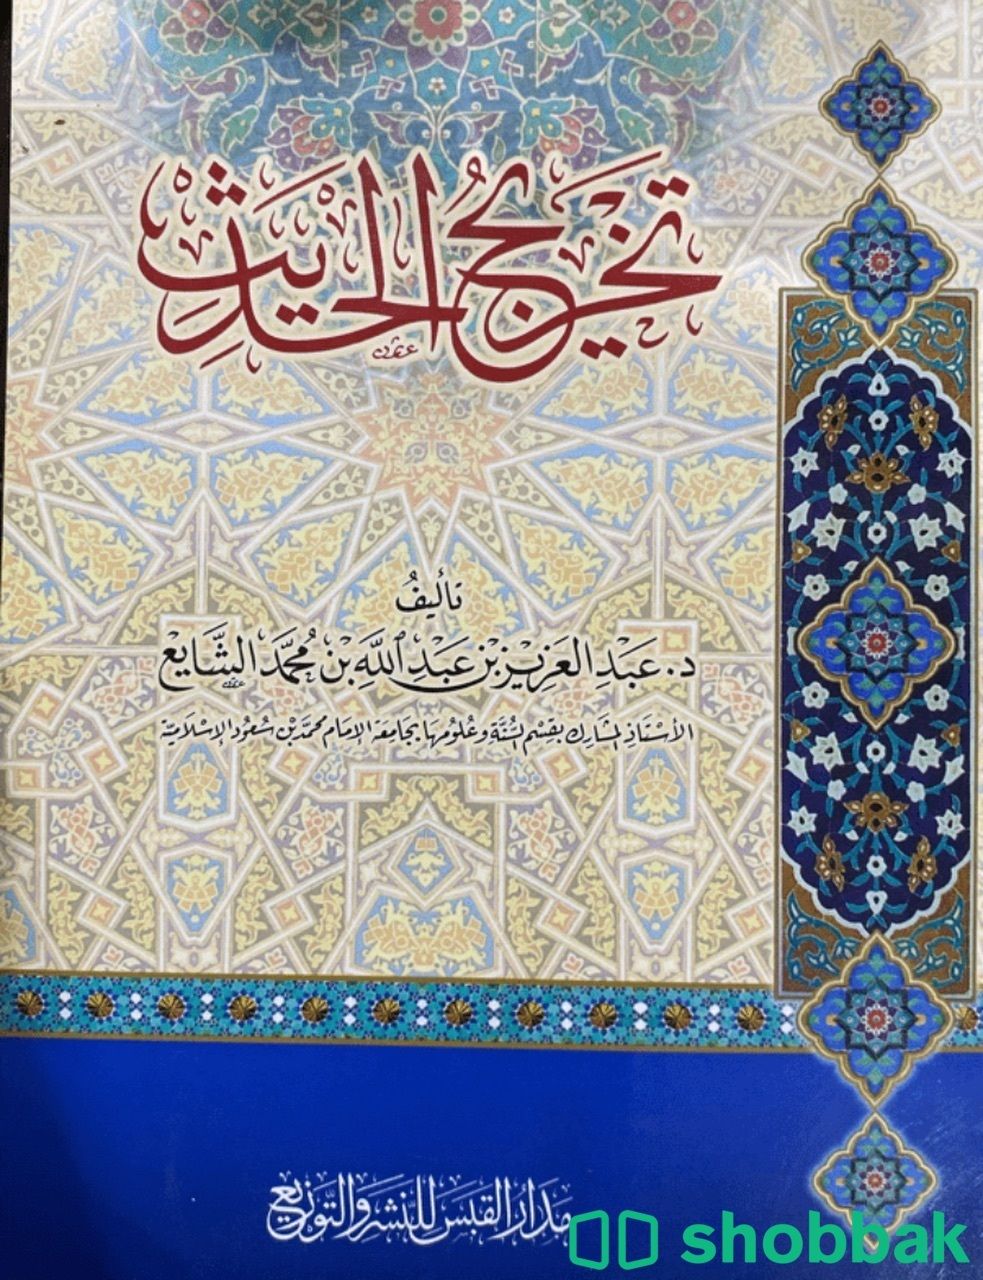 كتاب تخريج الحديث للشايع Shobbak Saudi Arabia